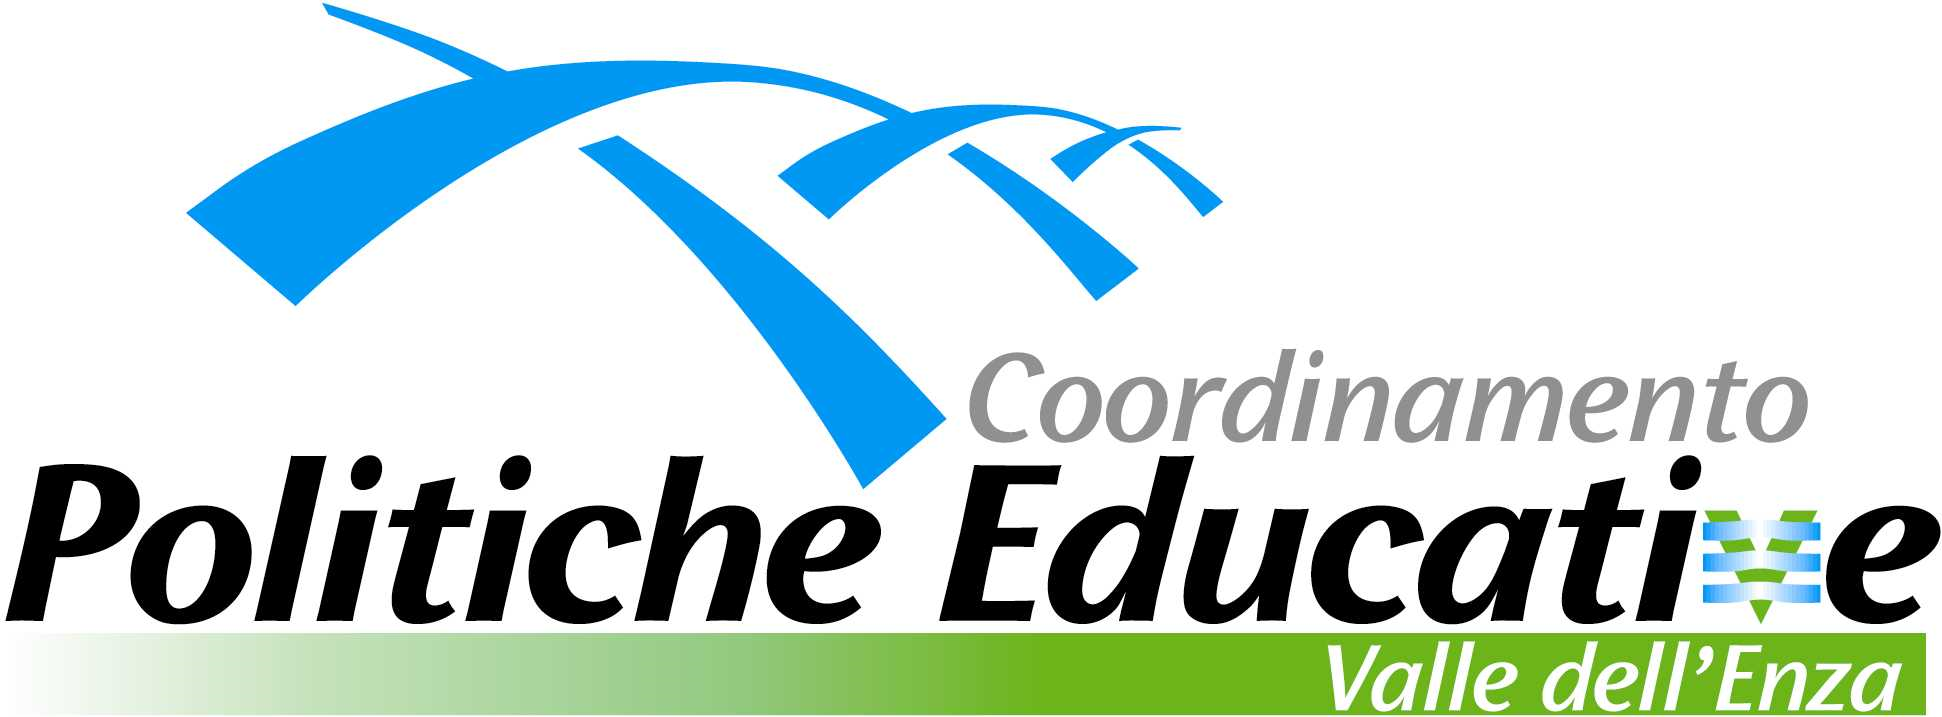 Logo politiche educative